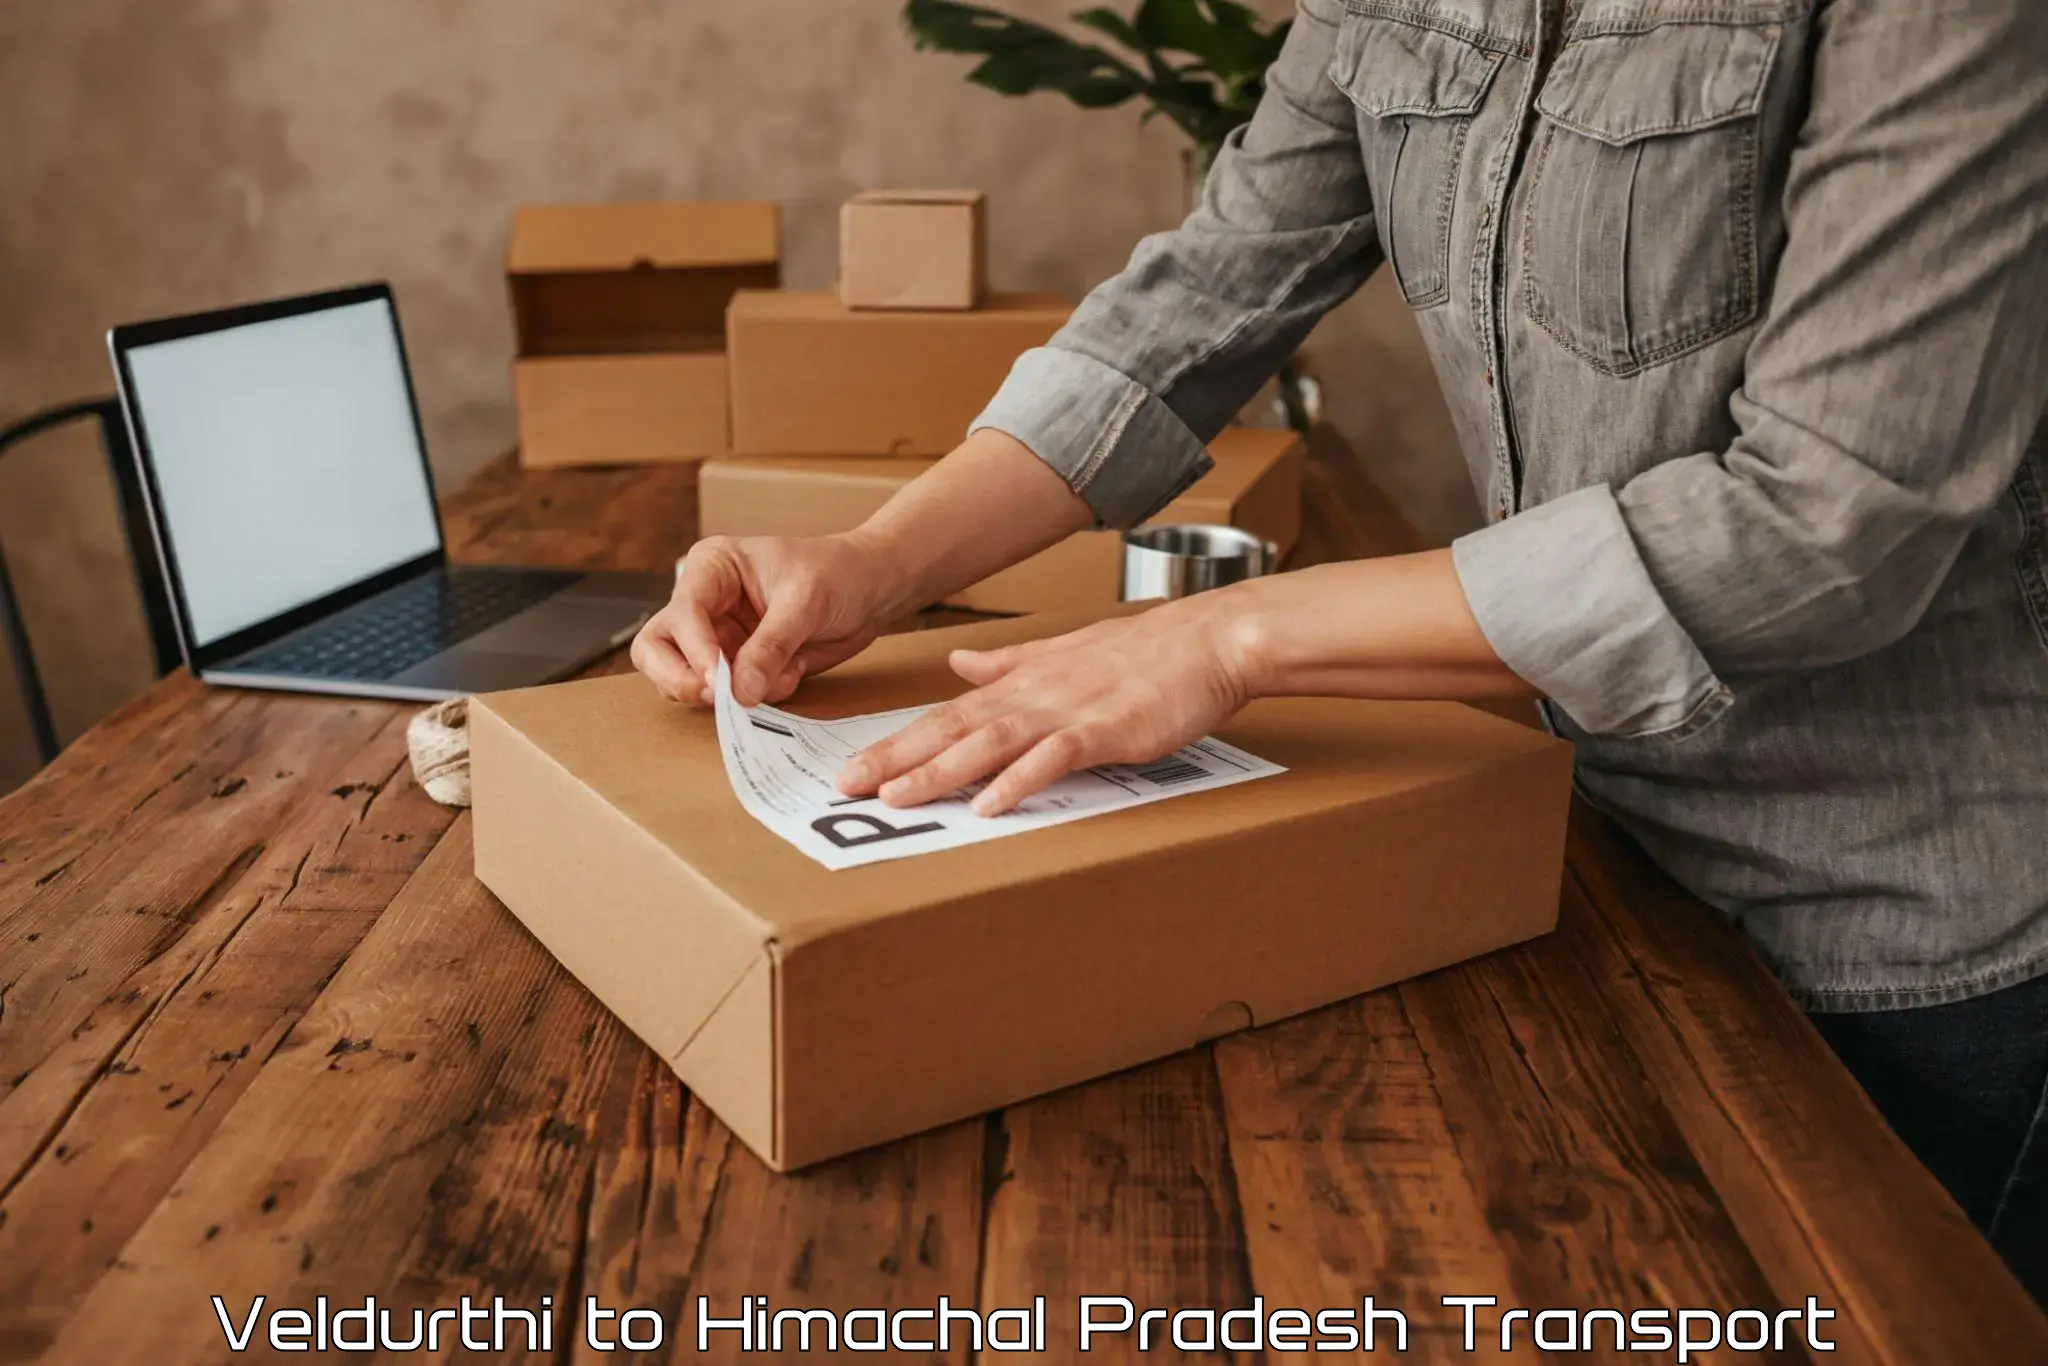 Online transport service Veldurthi to Himachal Pradesh